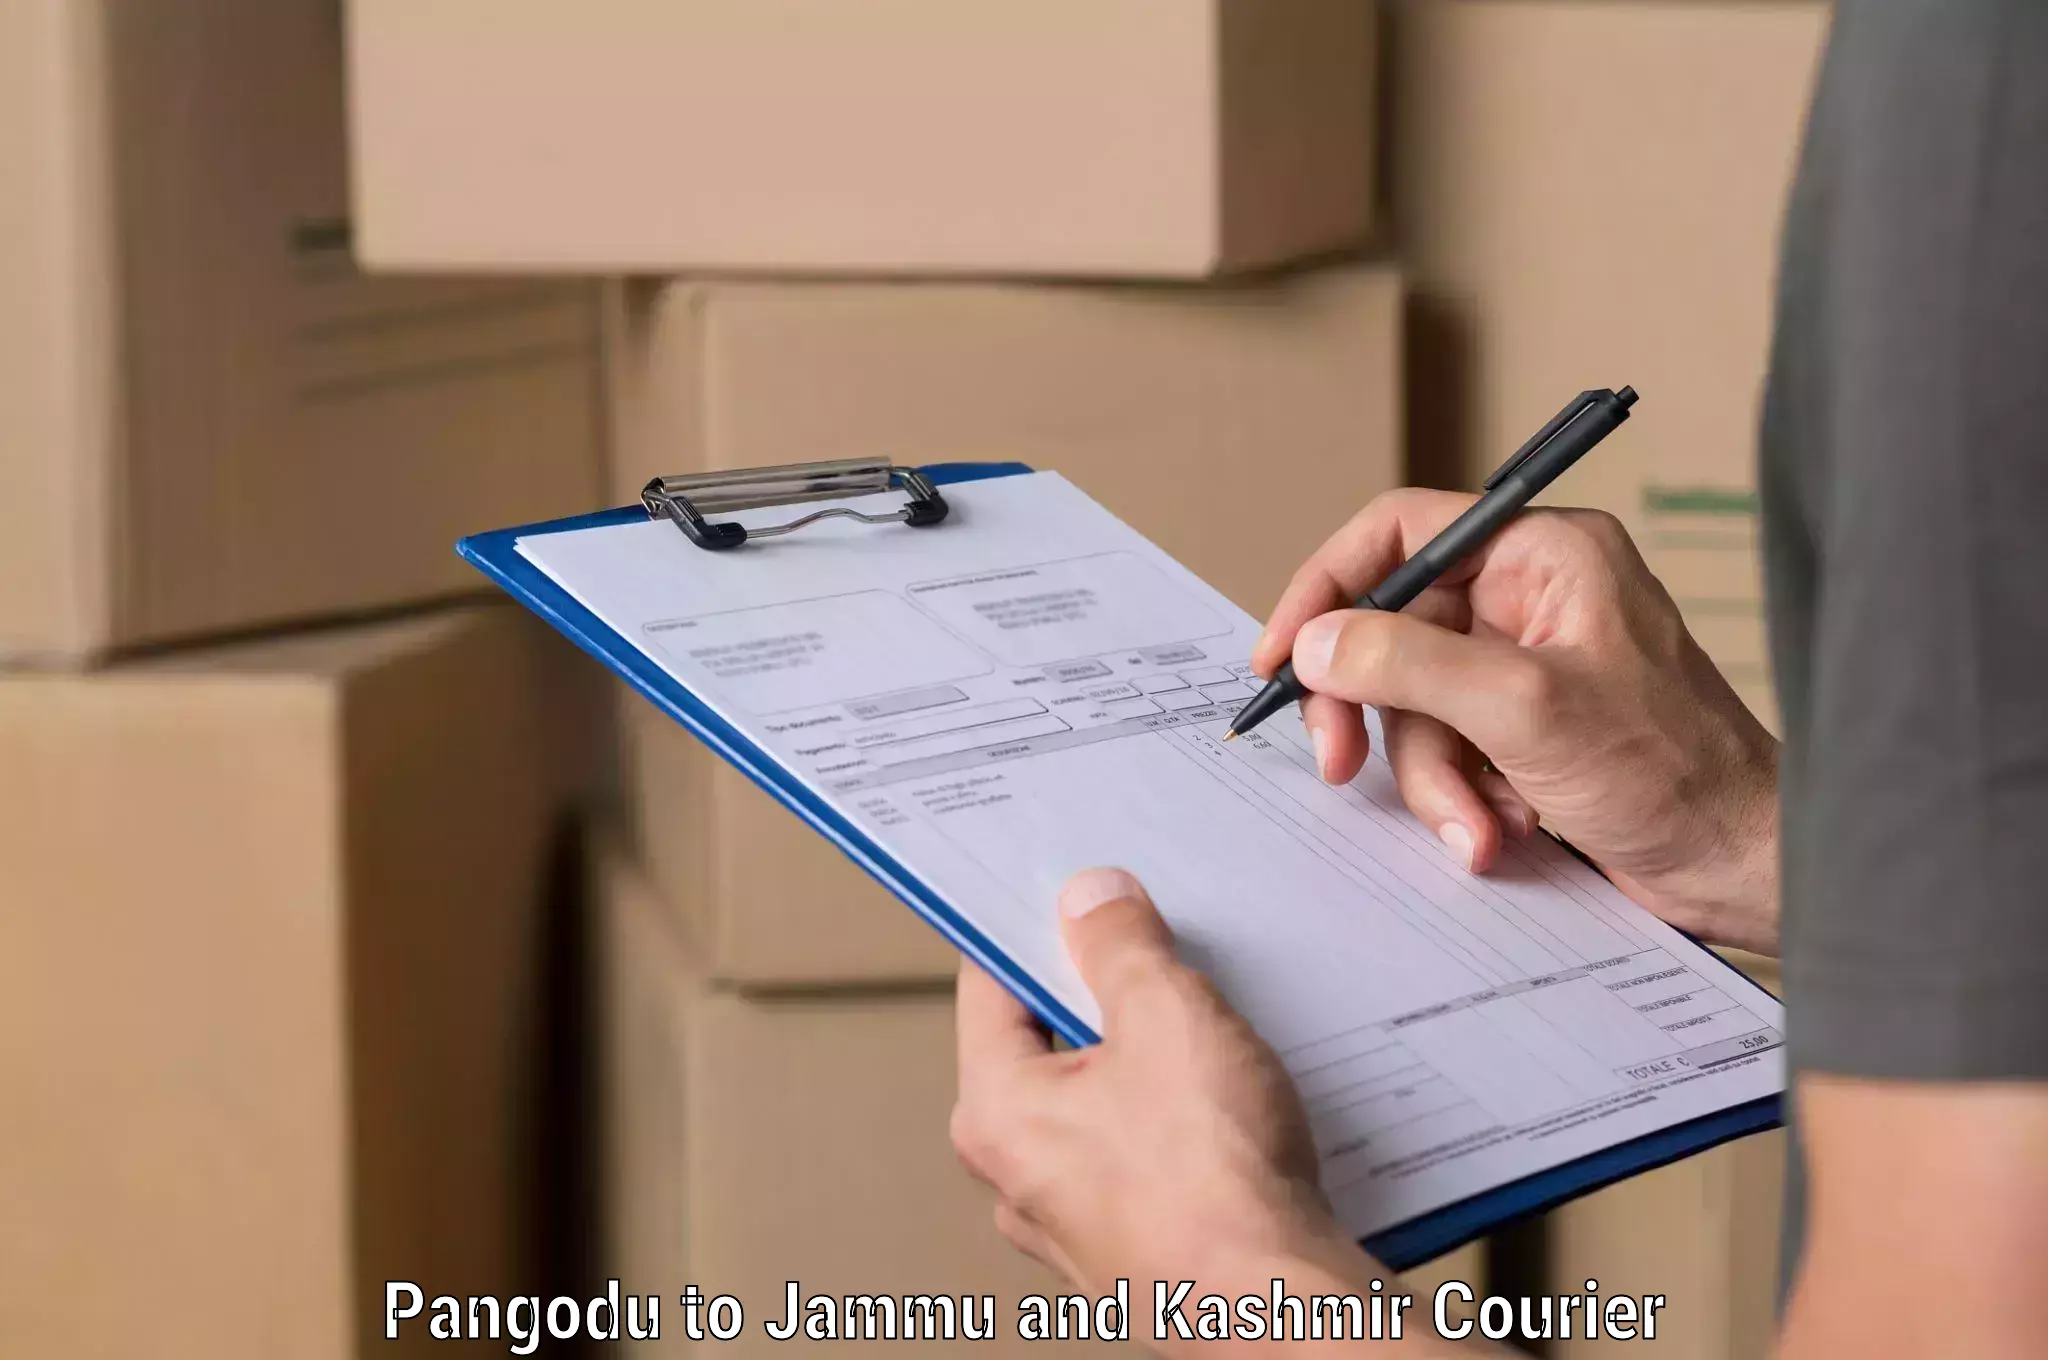 Global freight services Pangodu to Jammu and Kashmir